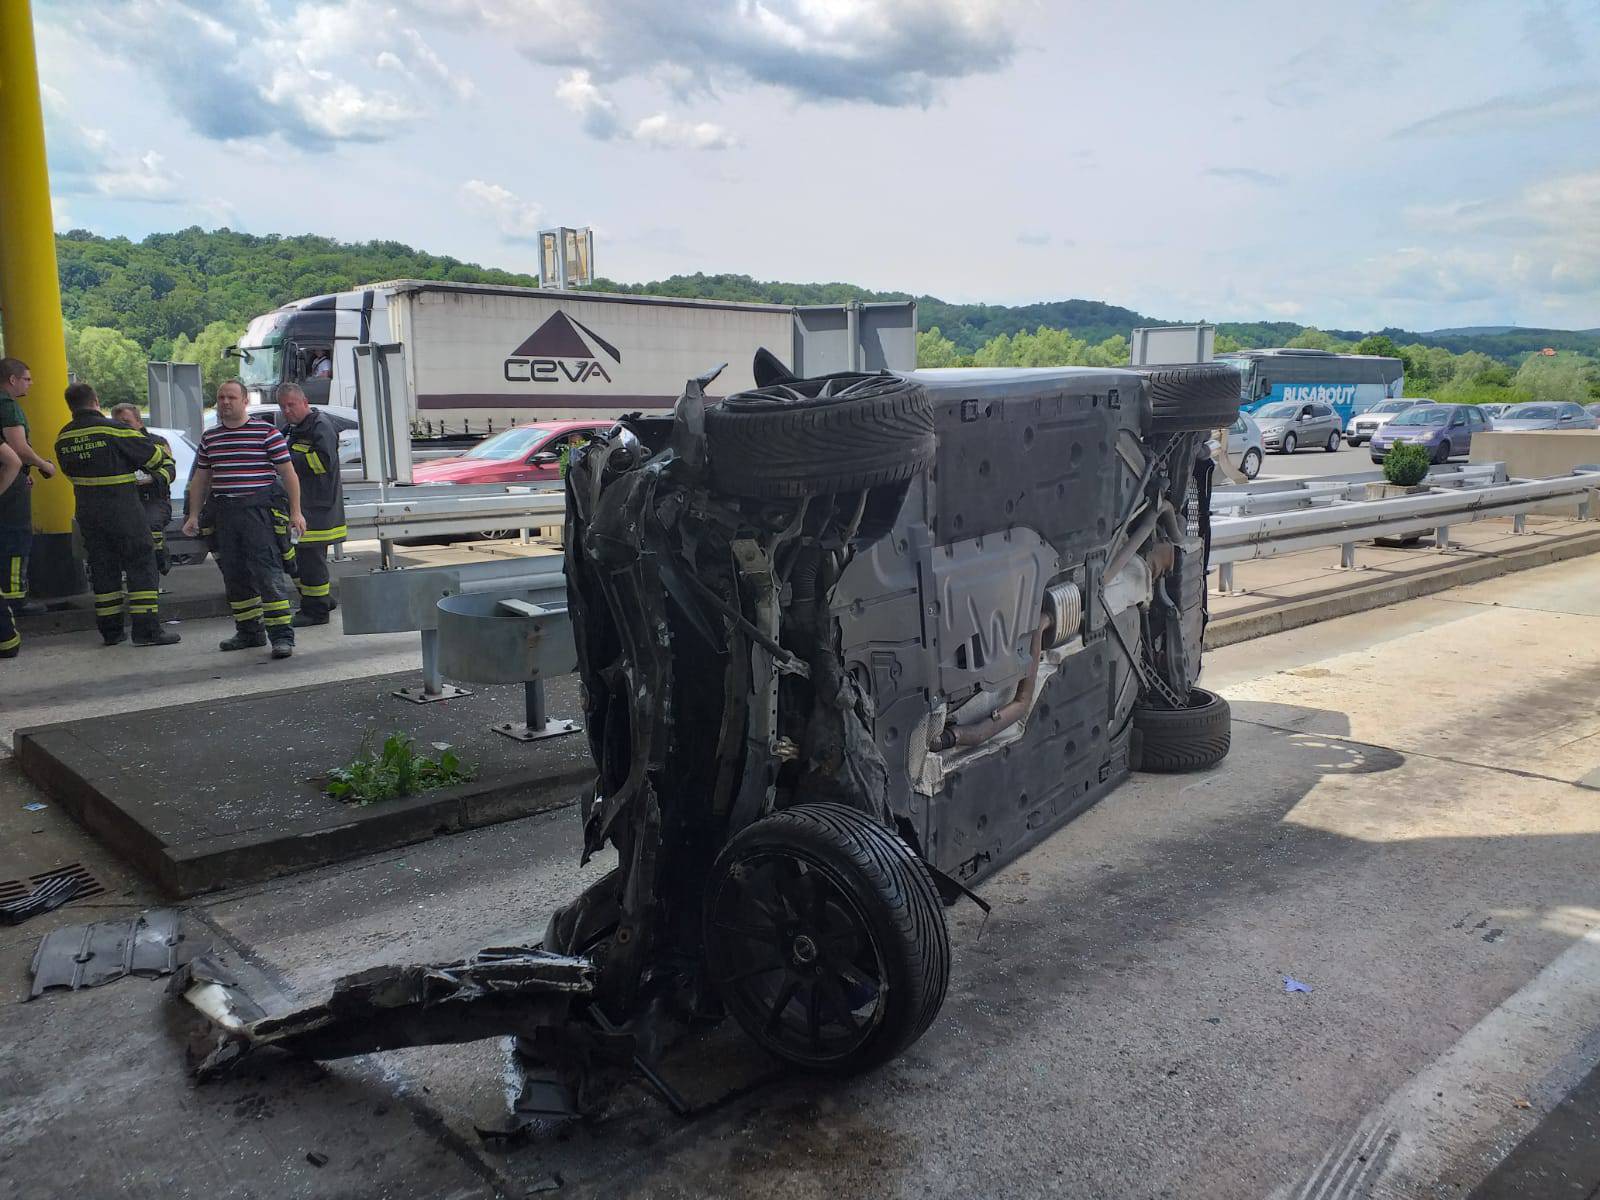 Vatrogasci: 'Netko je iz BMW-a nakon nesreće htio nešto uzeti'